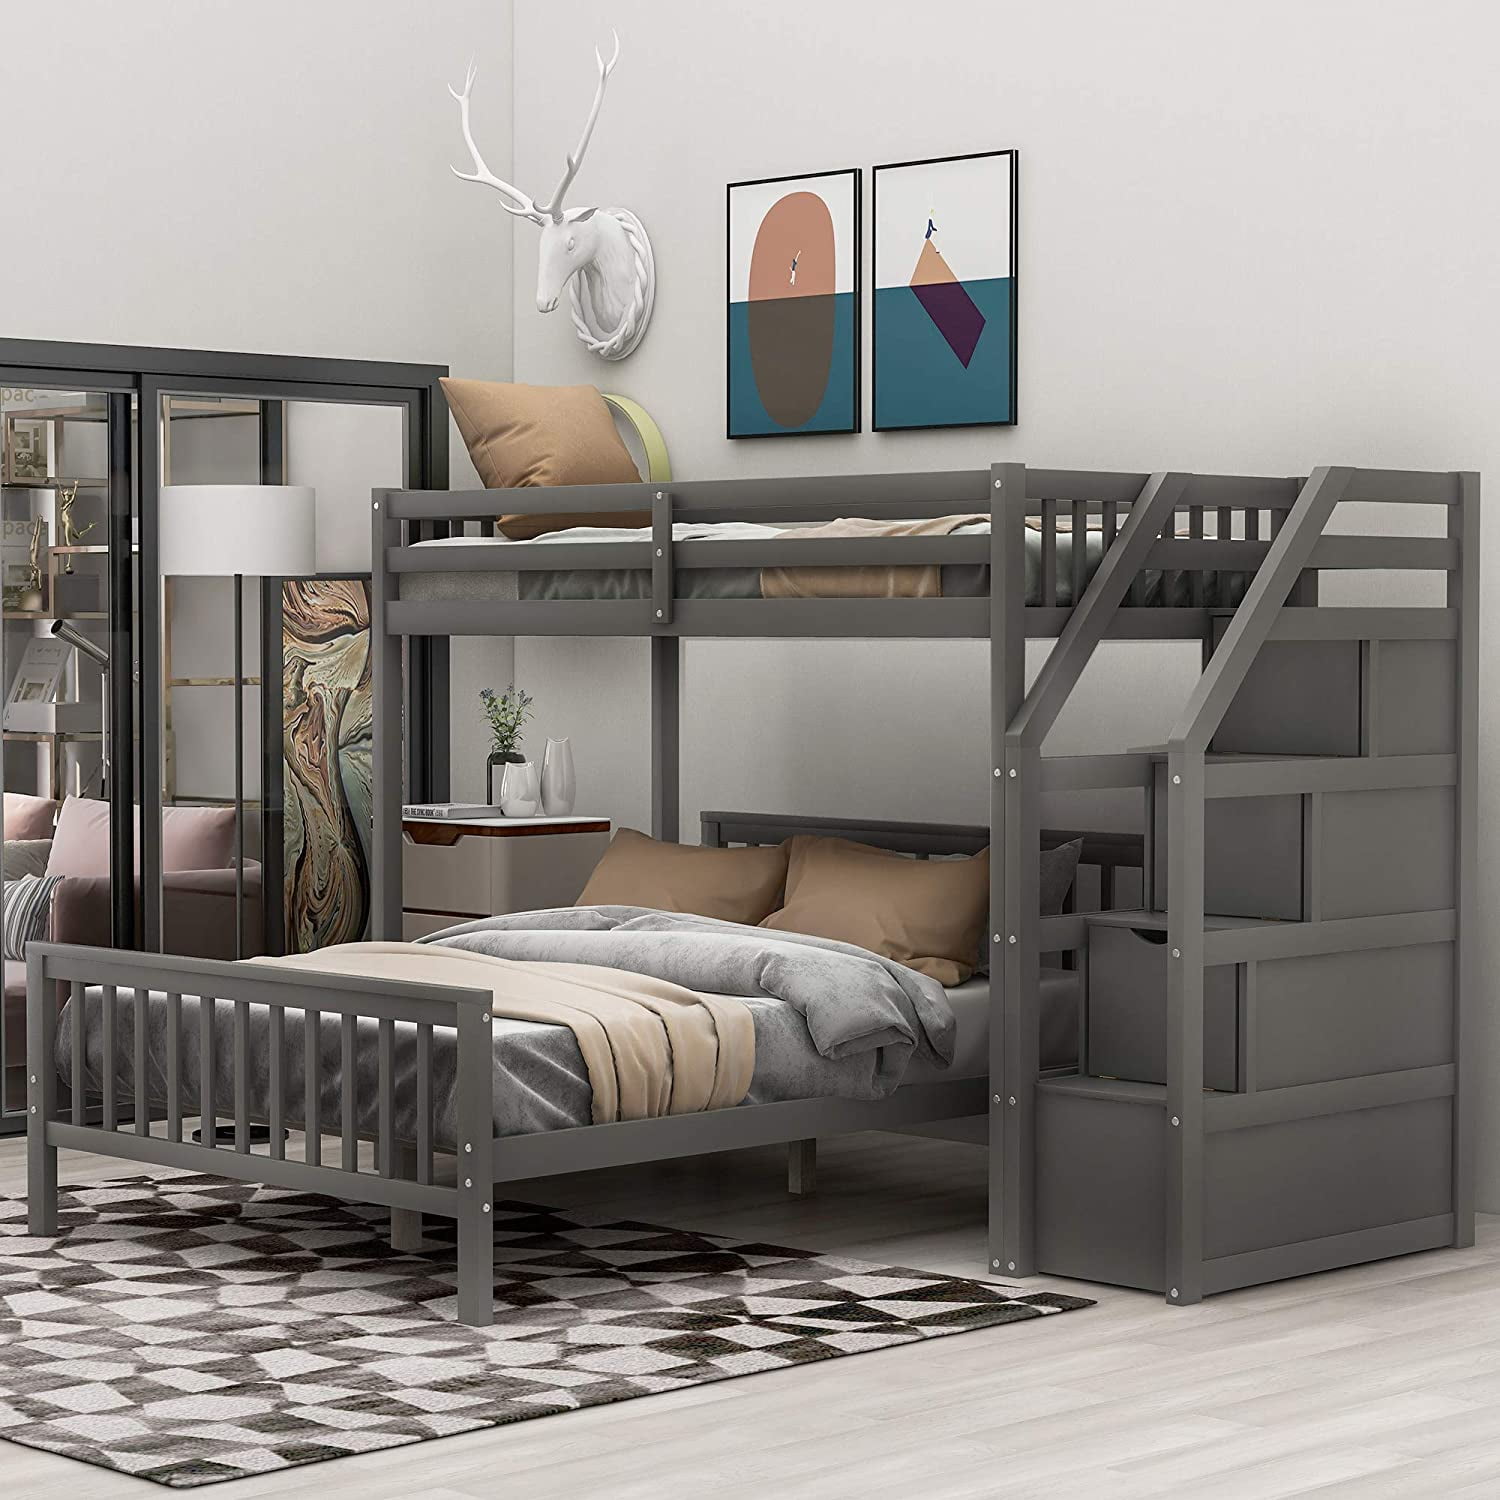 Twin Loft Bed Metal Frame Kids Bedroom Furniture Ladder Boys Girls Guardrails 